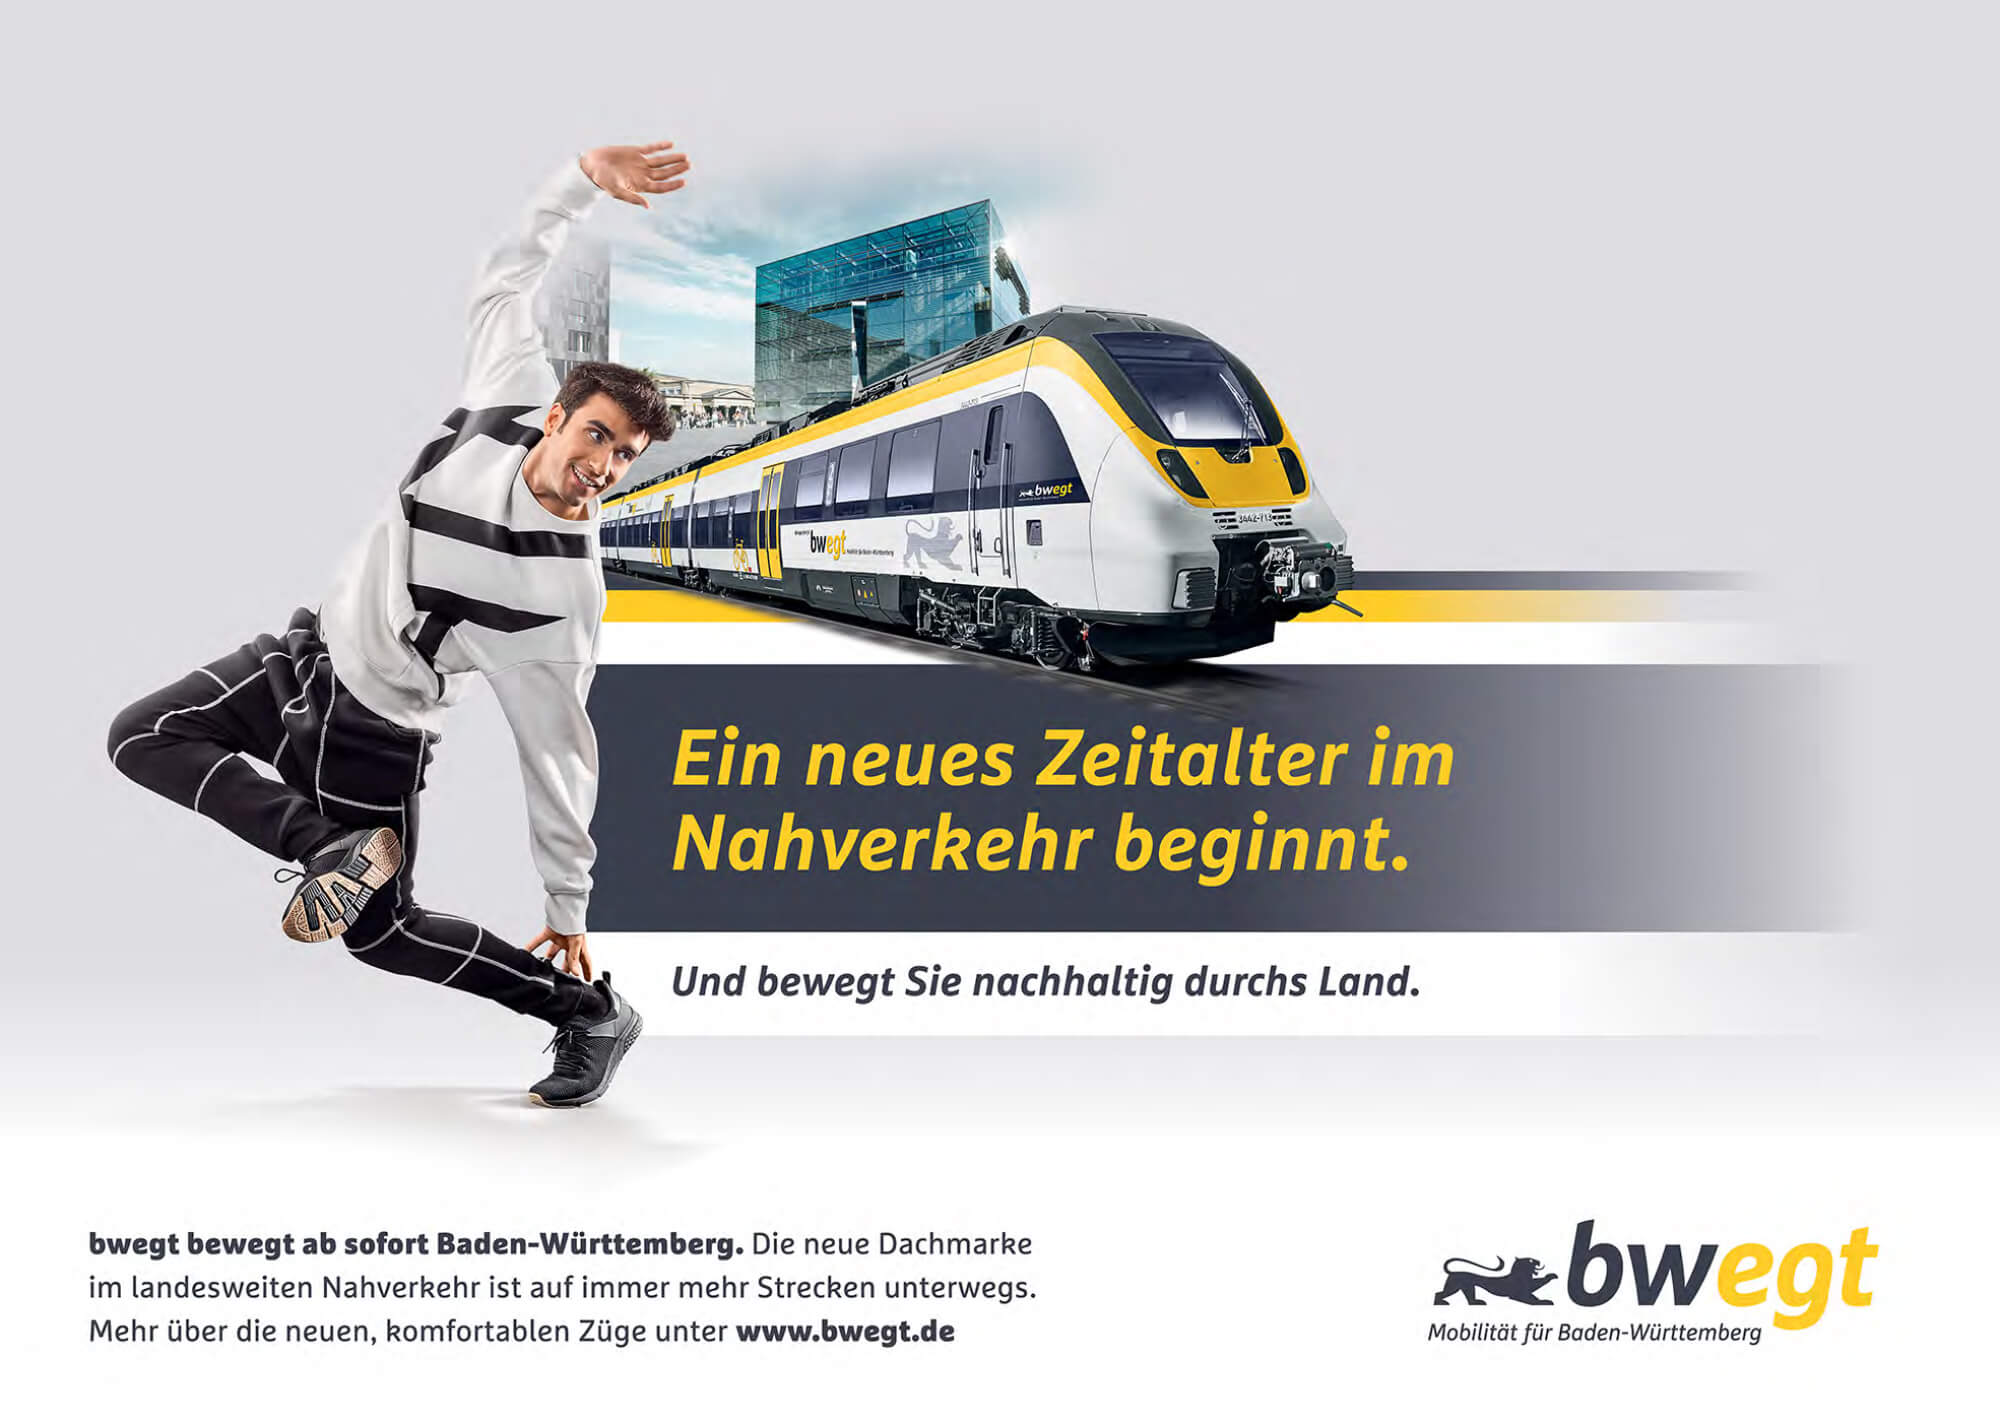 image: 'bwegt' Mobilität für Baden-Württemberg